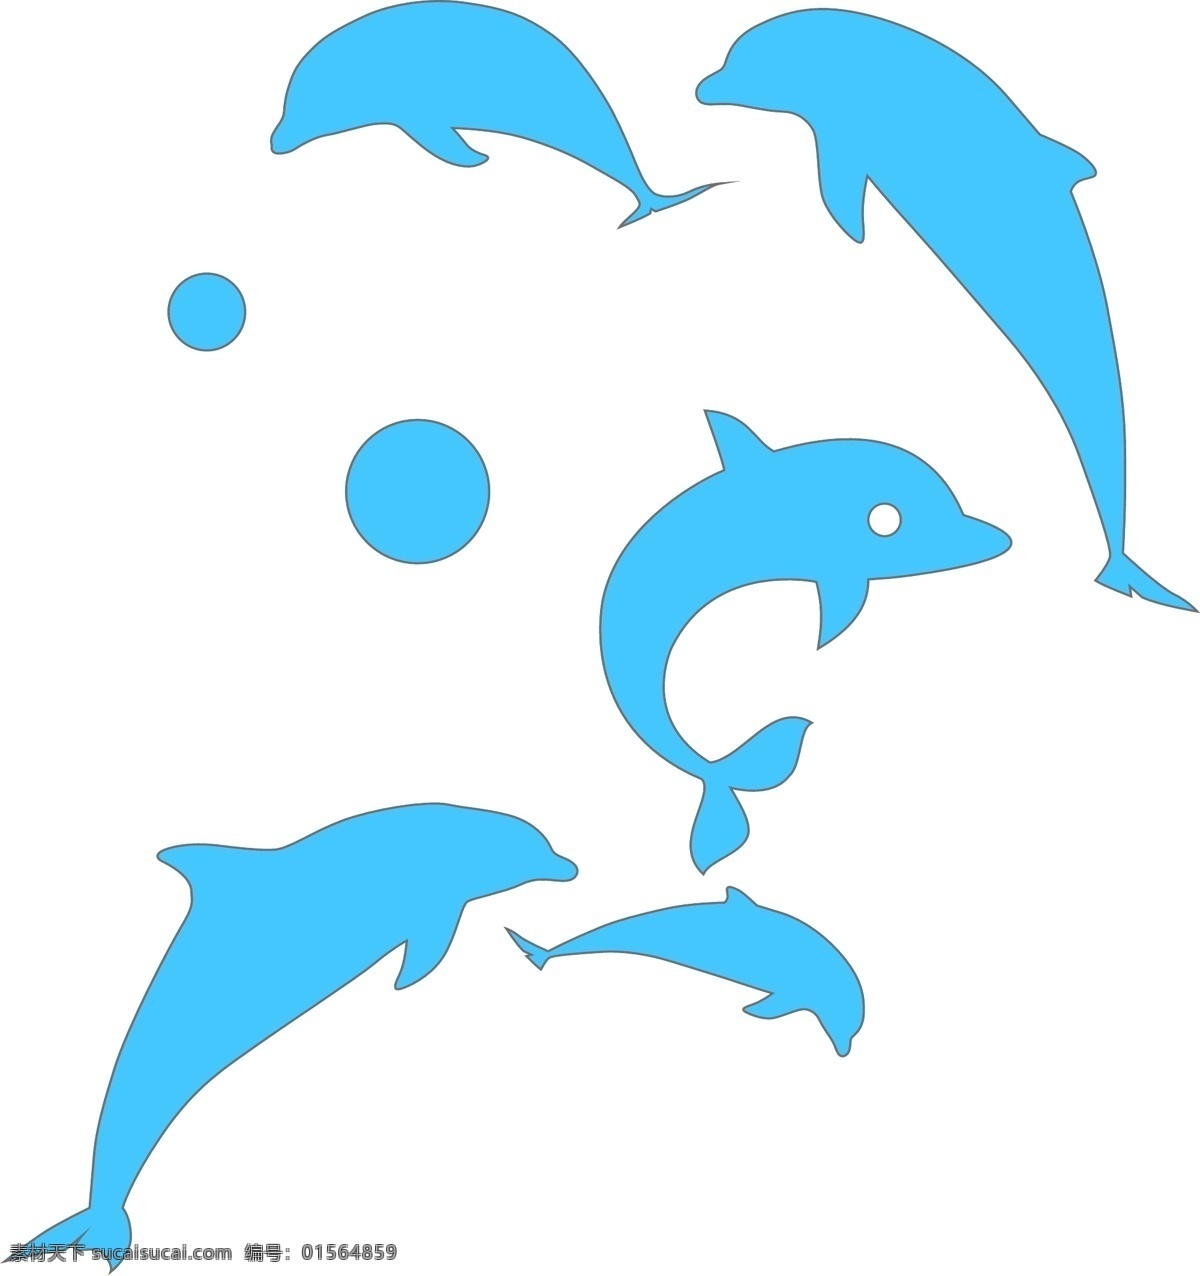 海豚 海豚标志 海洋生物 可爱 动物 卡通海豚 蓝色海豚 海豚简笔画 线条海豚 矢量海豚素材 矢量海豚 卡通素材 矢量 矢量素材 插画 简笔画 线条 线描 简画 黑白画 卡通 手绘 简单手绘画 海豚剪影 动物剪影 海洋动物剪影